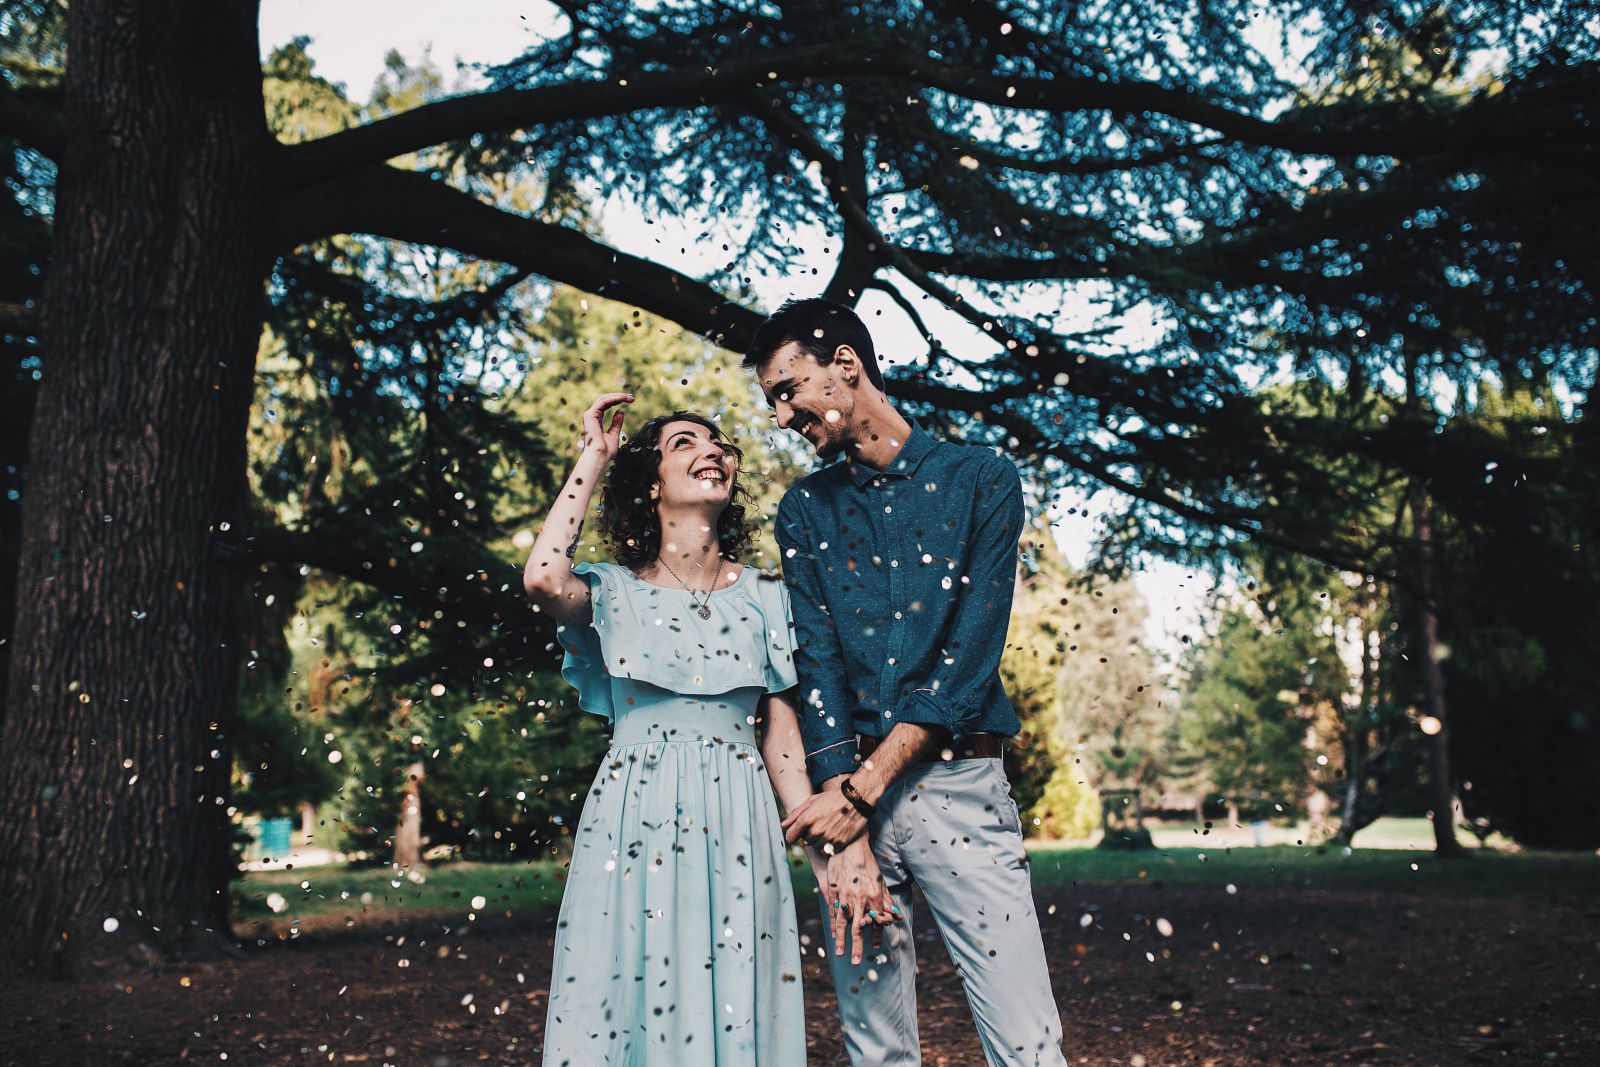 Home e mulher de mãos dadas em um parque com confete caindo